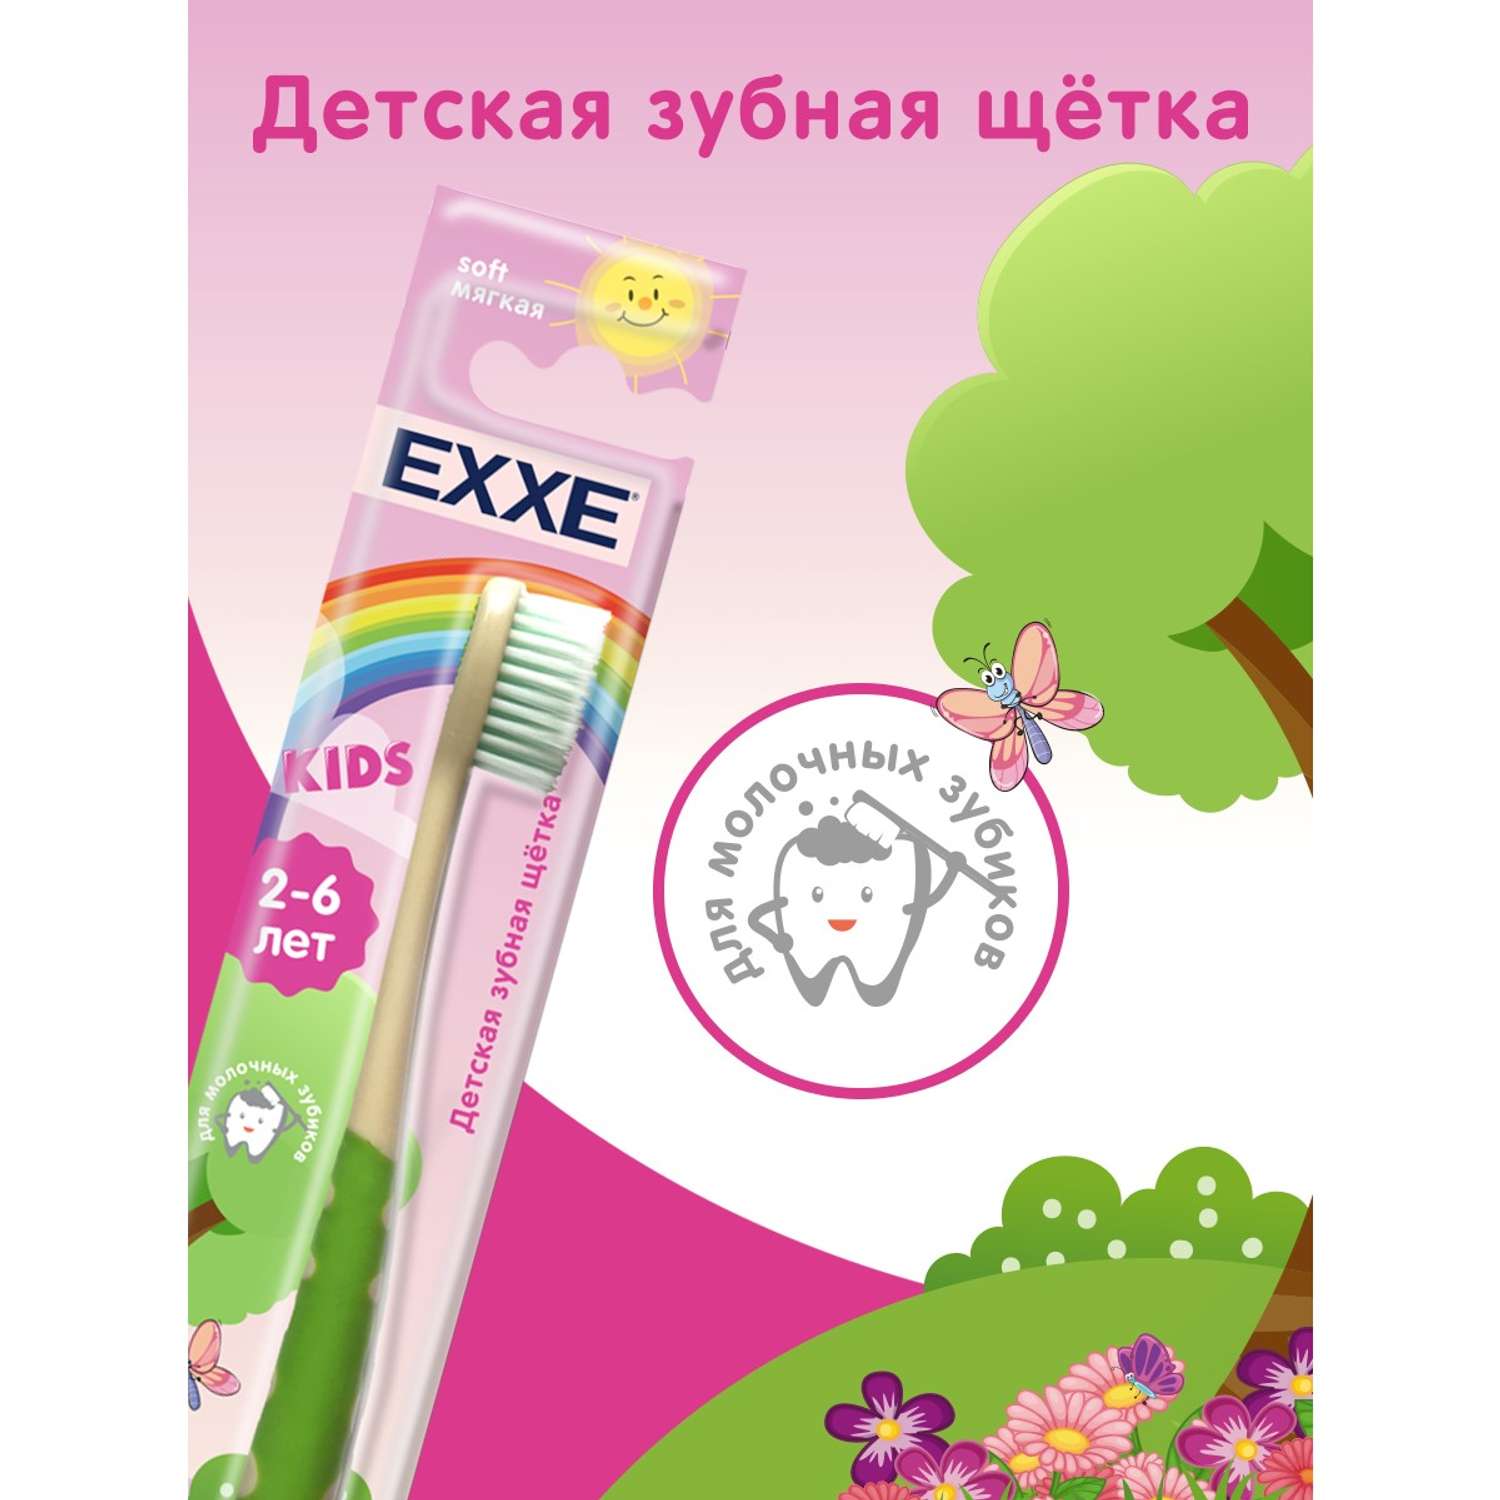 Детская зубная щётка EXXE 2-6 лет мягкая - фото 8